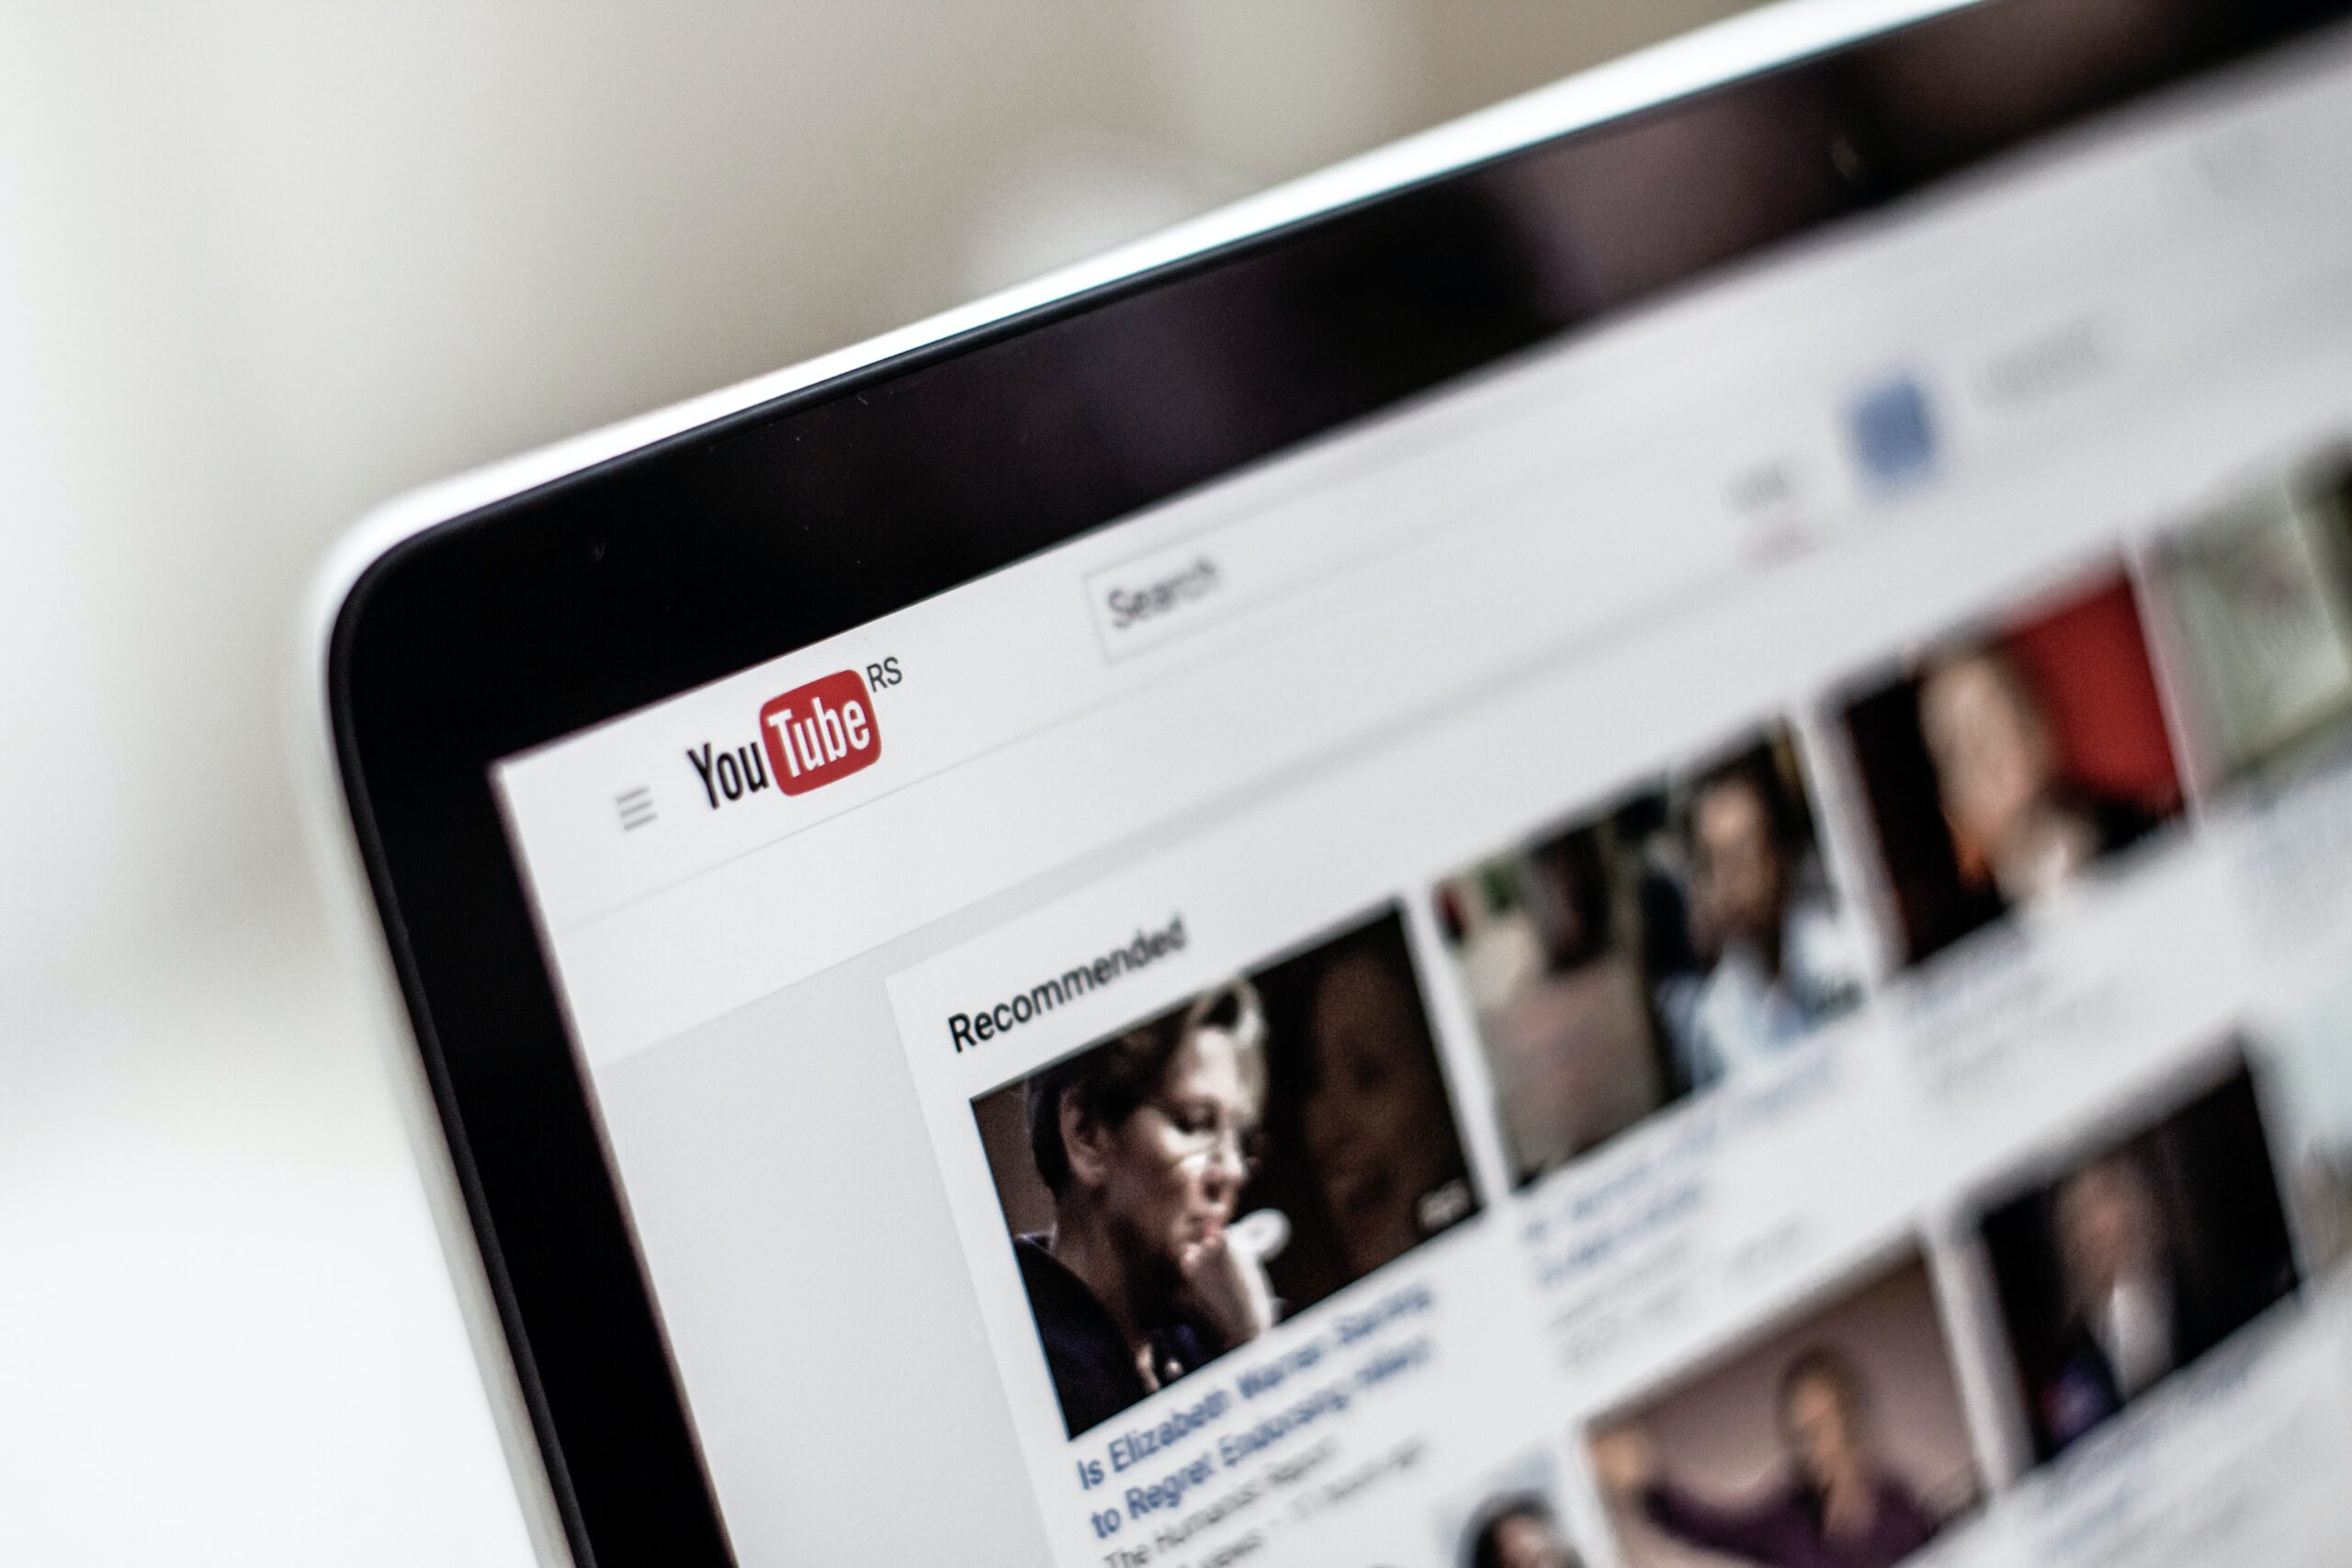 7 Cara Mengatasi YouTube Tidak Terbuka di Perangkat Berbeda